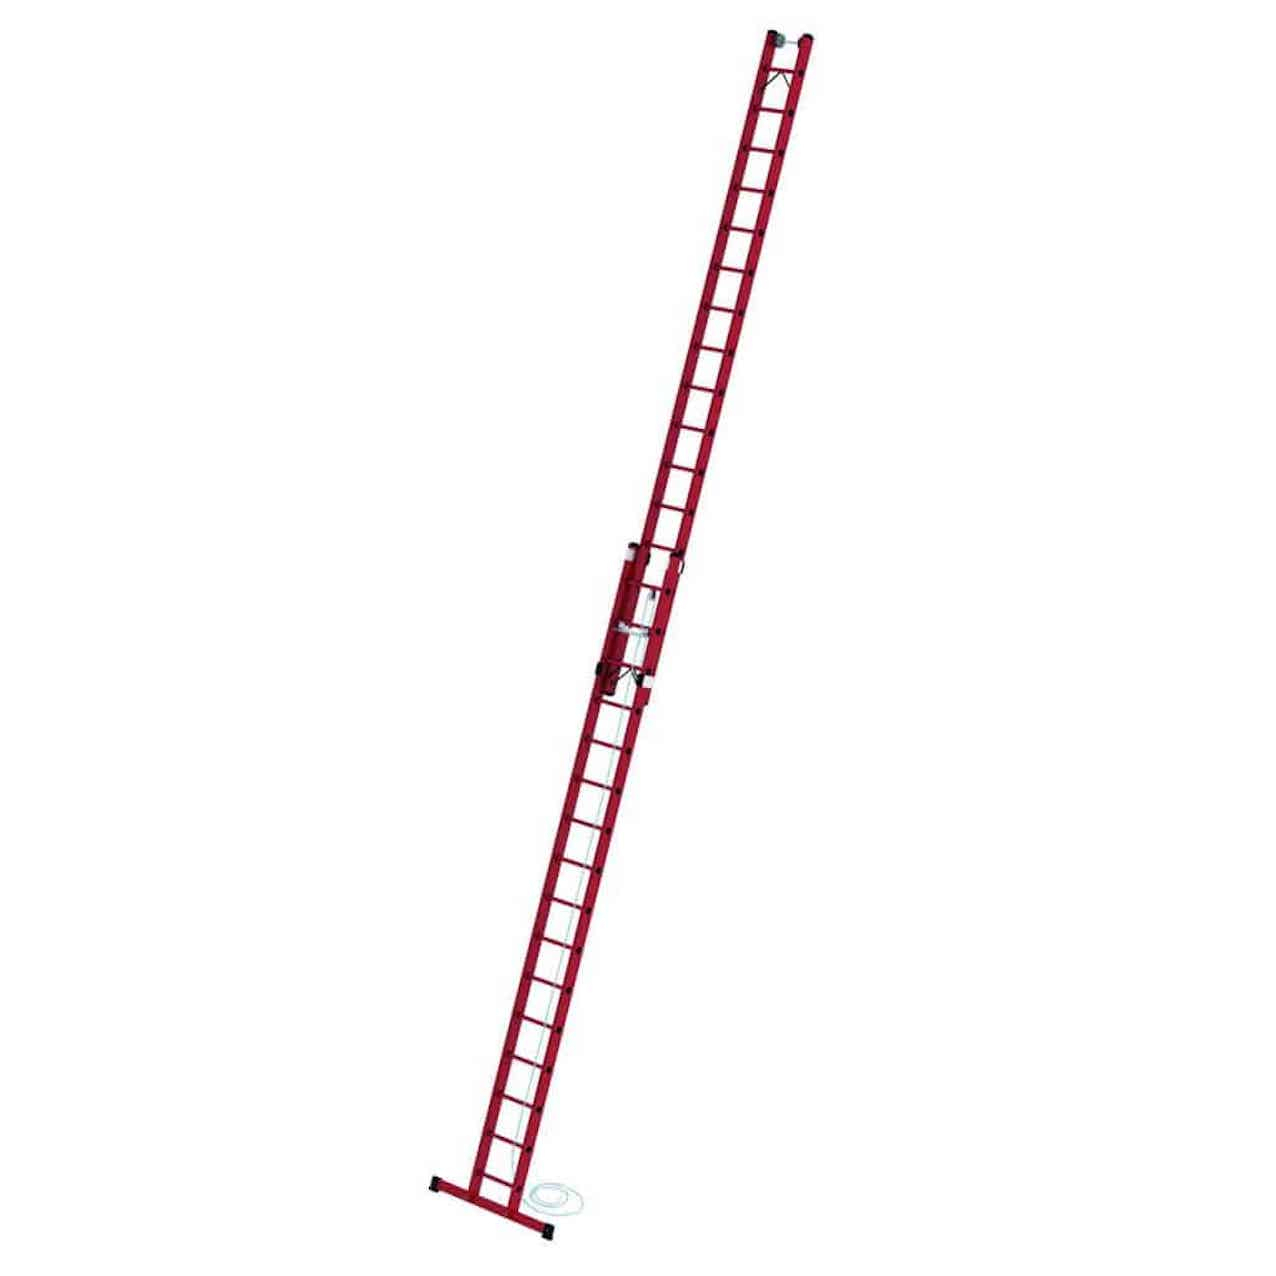 Vollkunststoff-Seilzugleiter mit Standard-Traverse 2x14 Sprossen/Stufen